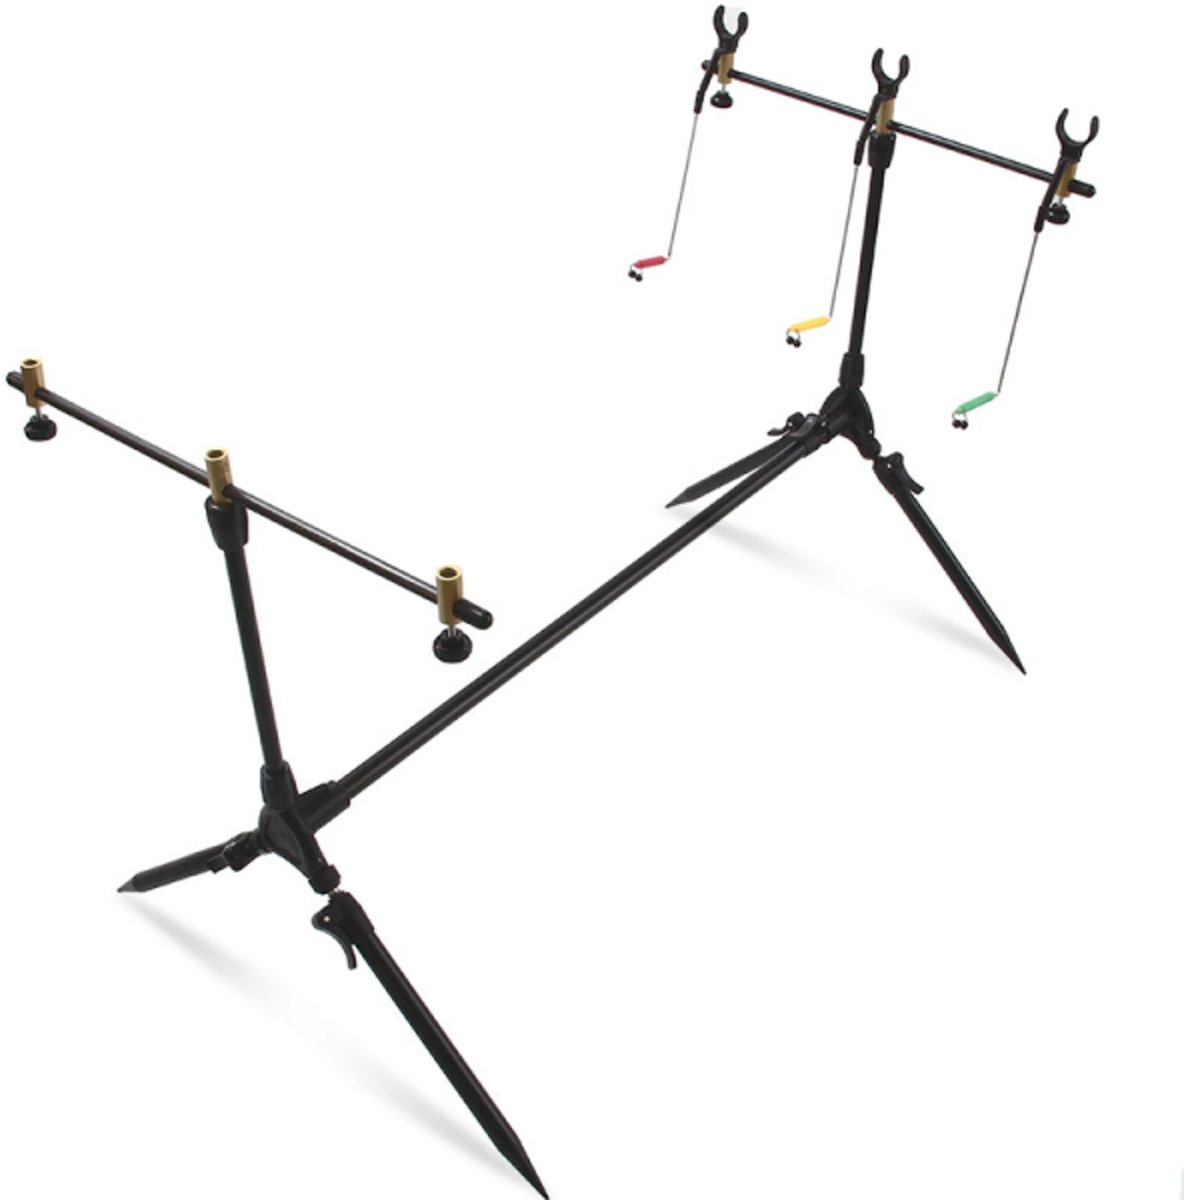 NGT Session Rodpod met Swingers en Steuntjes - 3 hengels - inclusief Buzzerbars, hengelsteunen en swingers - 117 x 71cm - Zwart